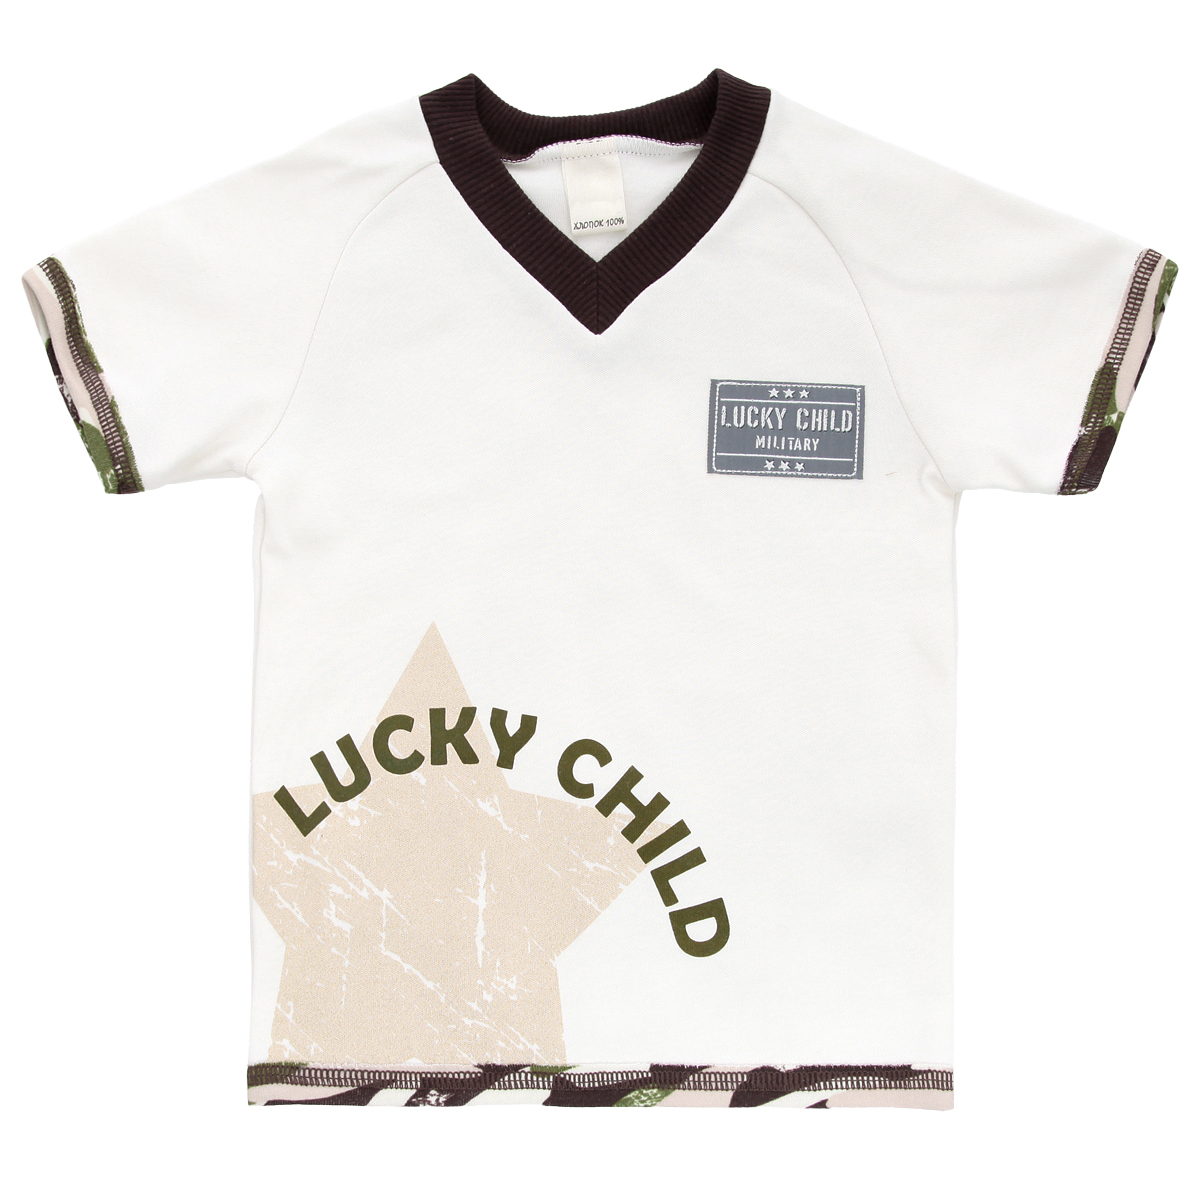 Футболка для мальчика Lucky Child Вежливые люди, цвет: светло-бежевый, темно-коричневый, зеленый. 31-262. Размер 104/110